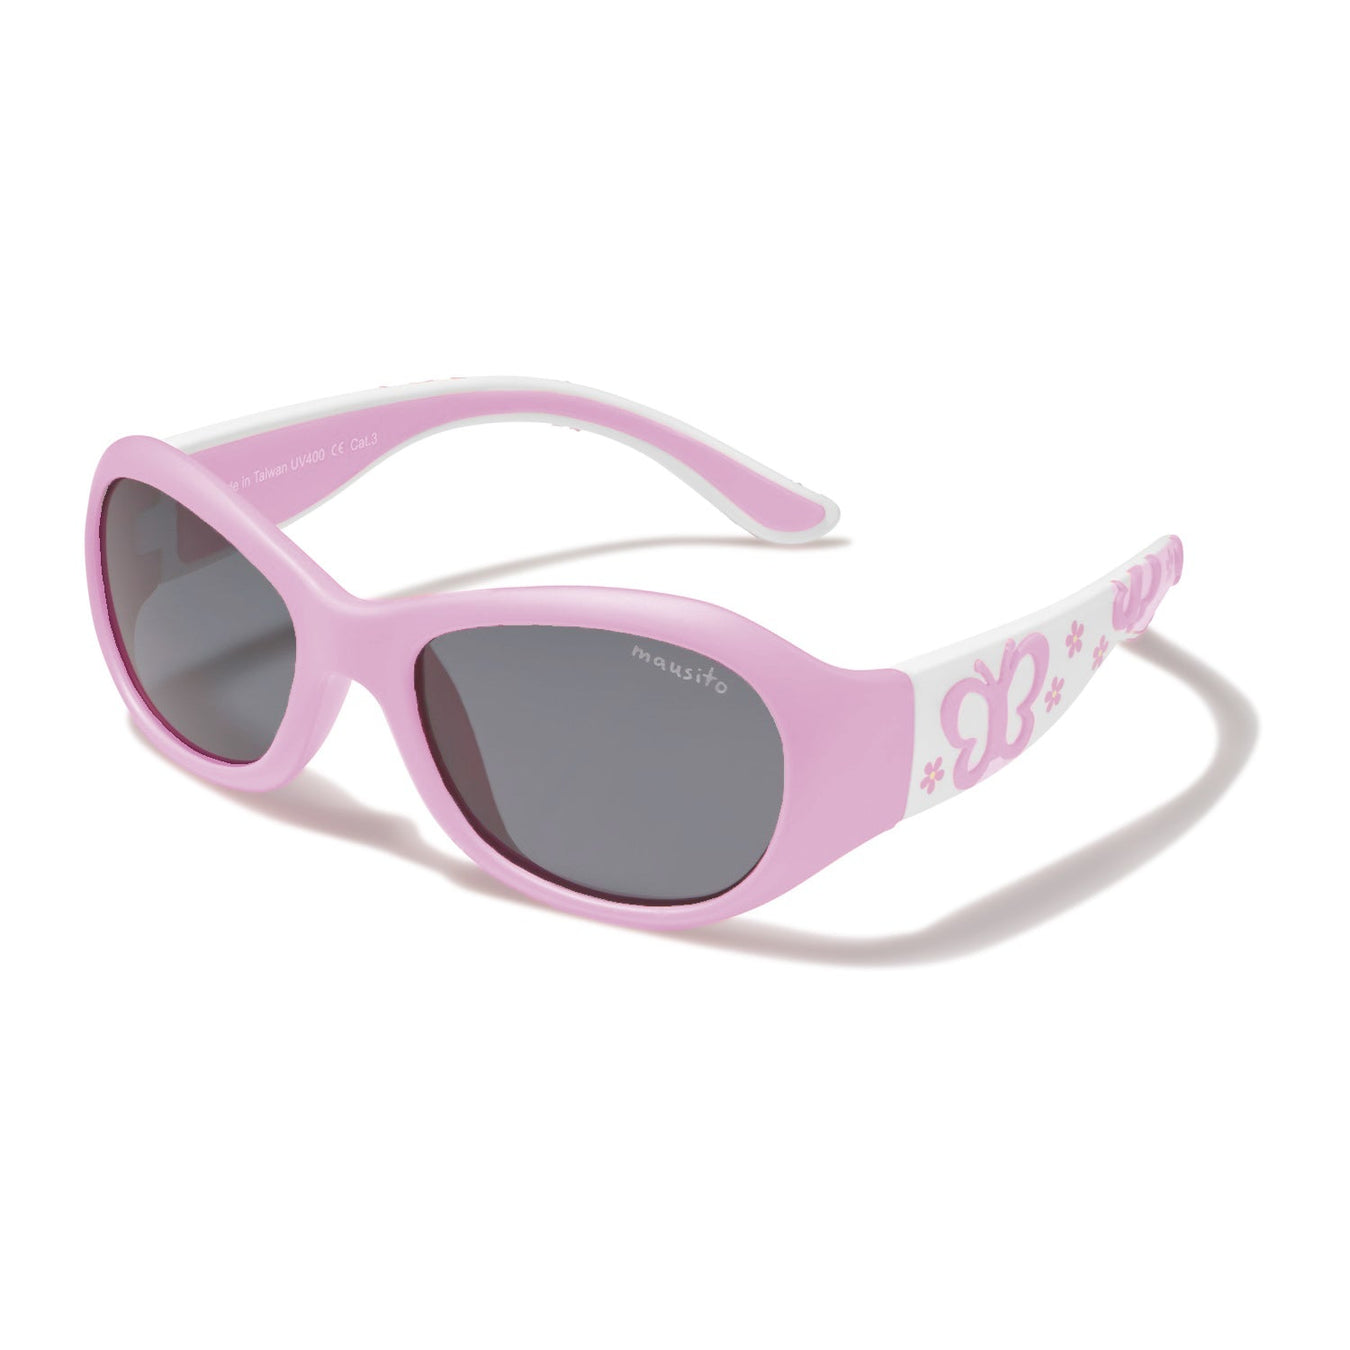 THE POPPER - MAUSITO - Kindersonnenbrillen für Jungen und Mädchen